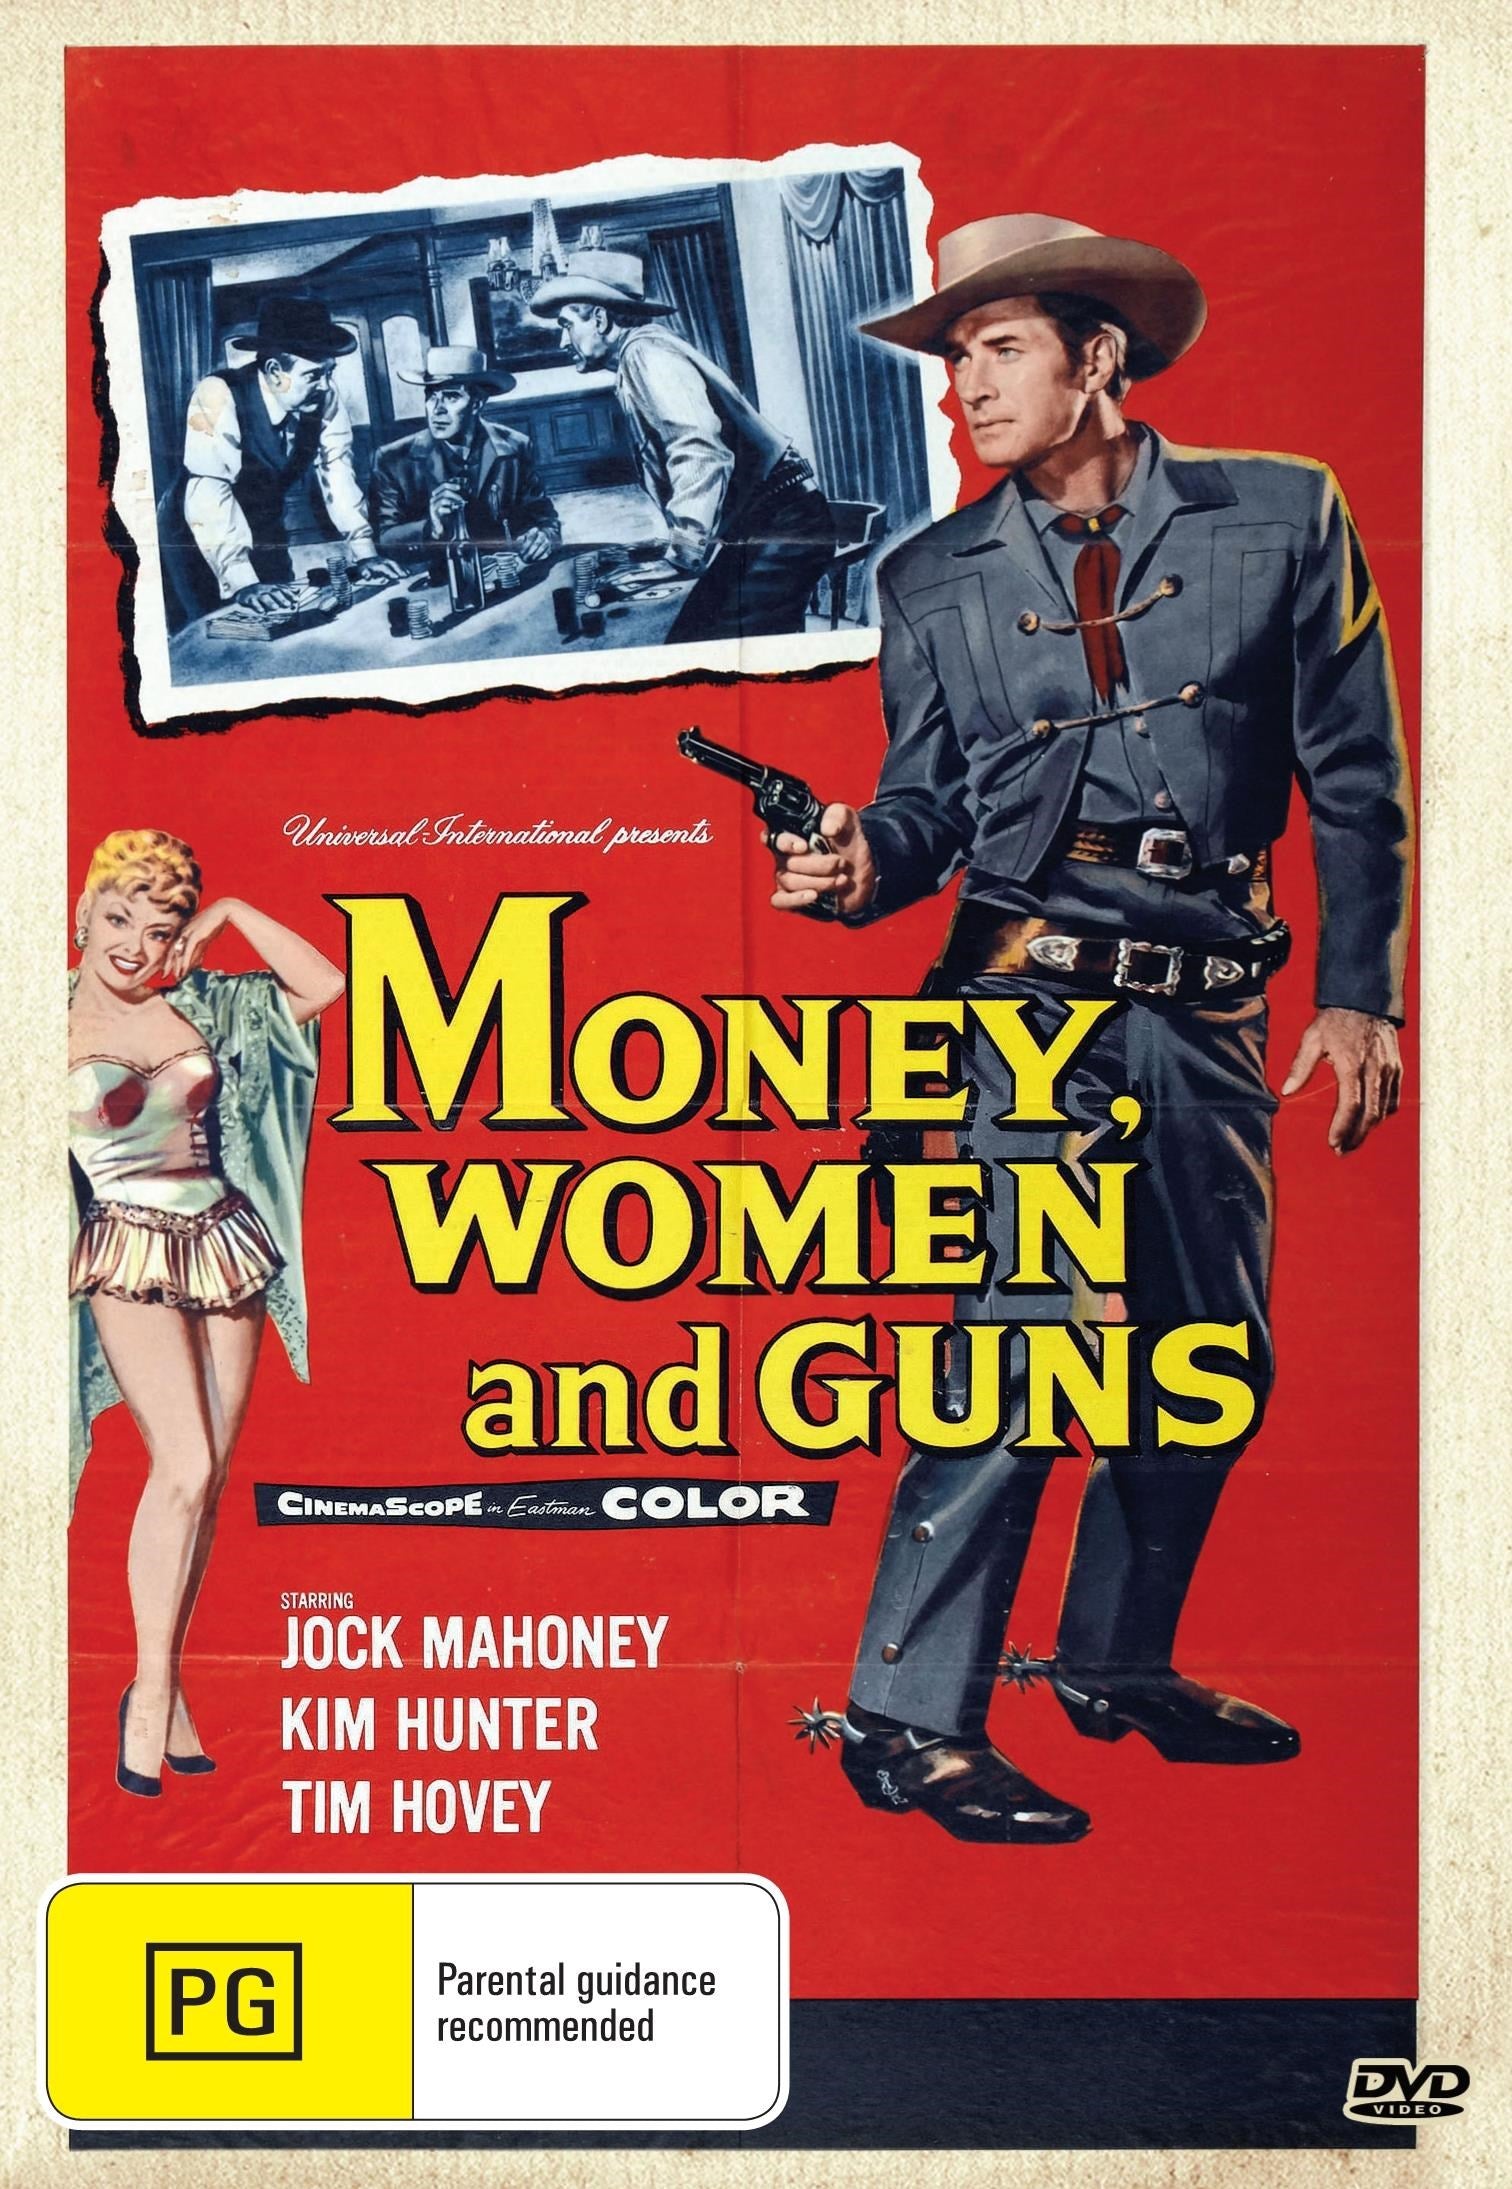 Money Women And Guns rareandcollectibledvds